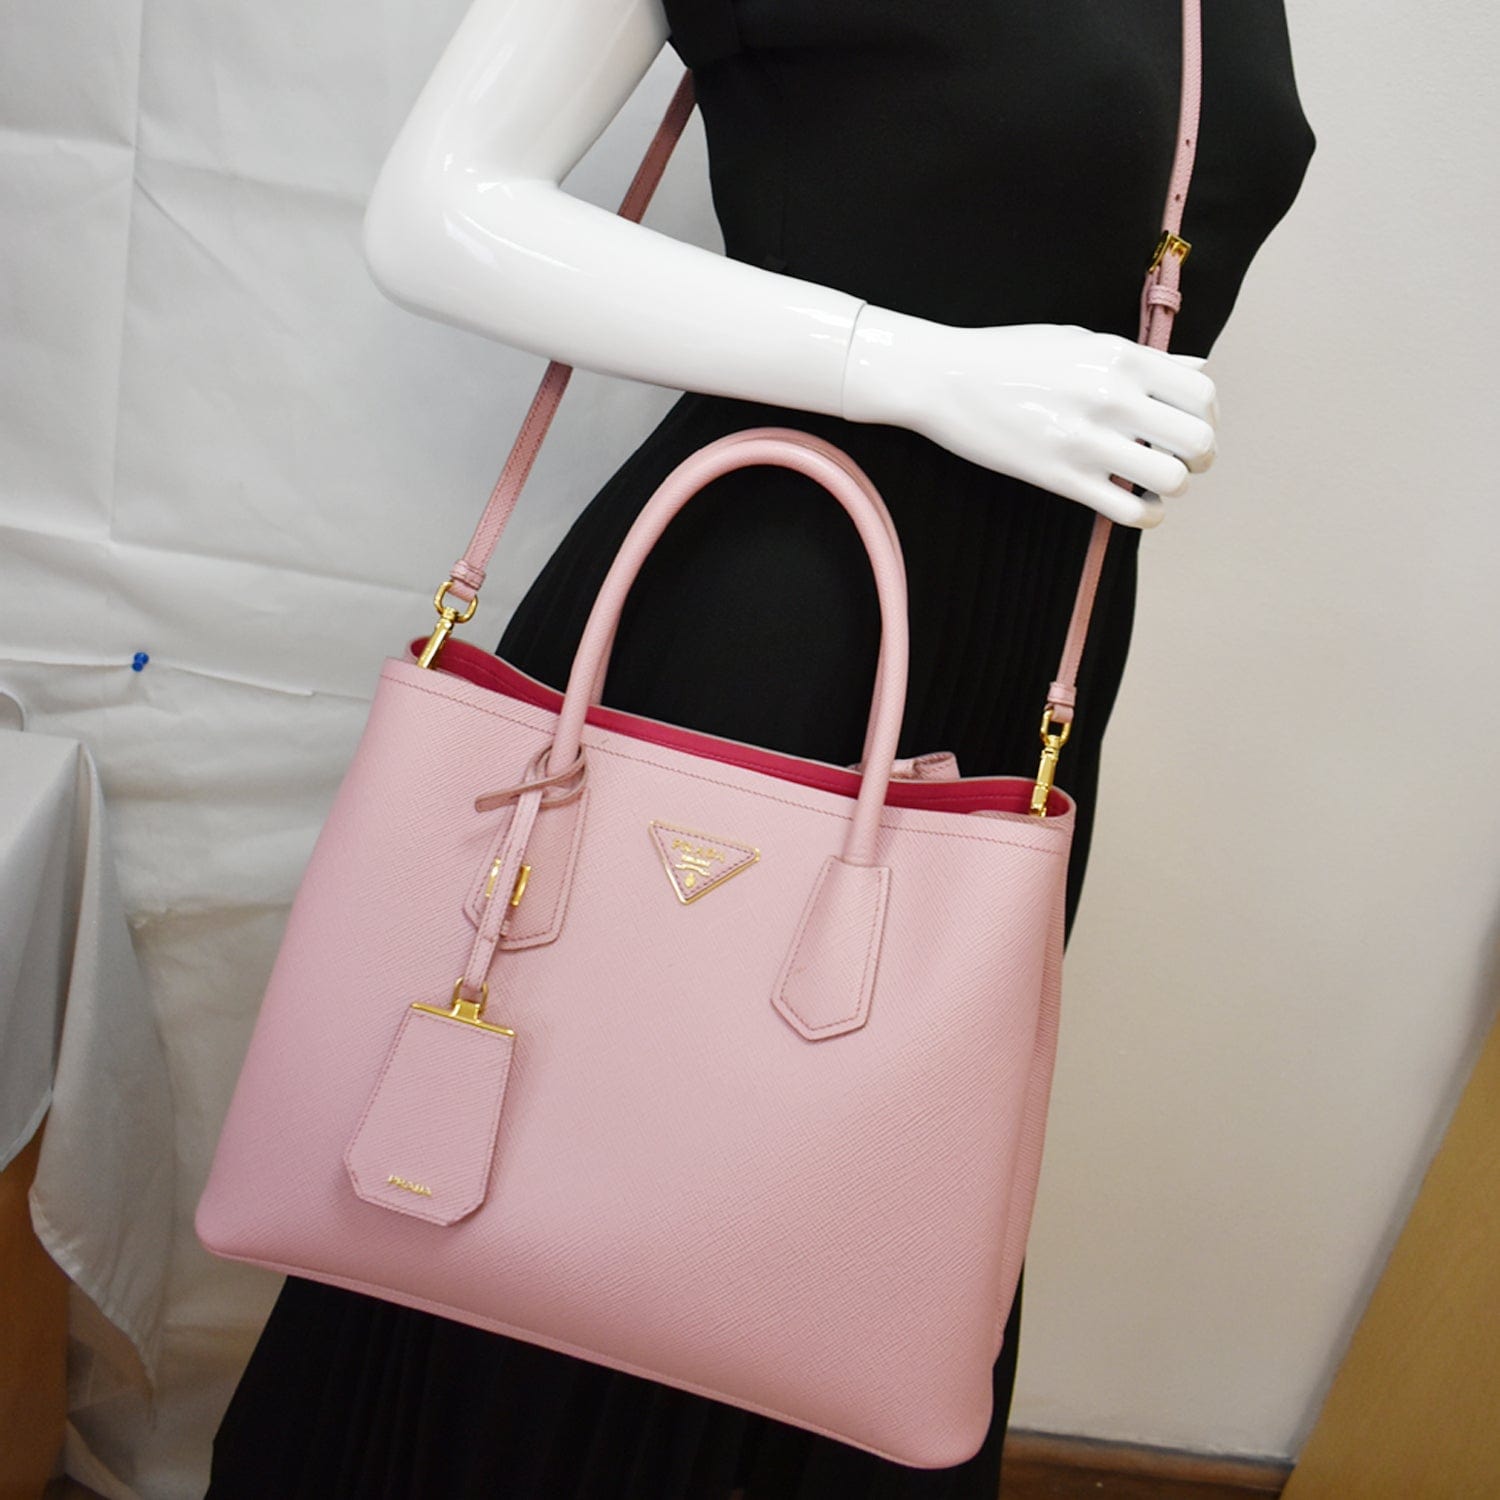 Prada Women's Bags  Pink 